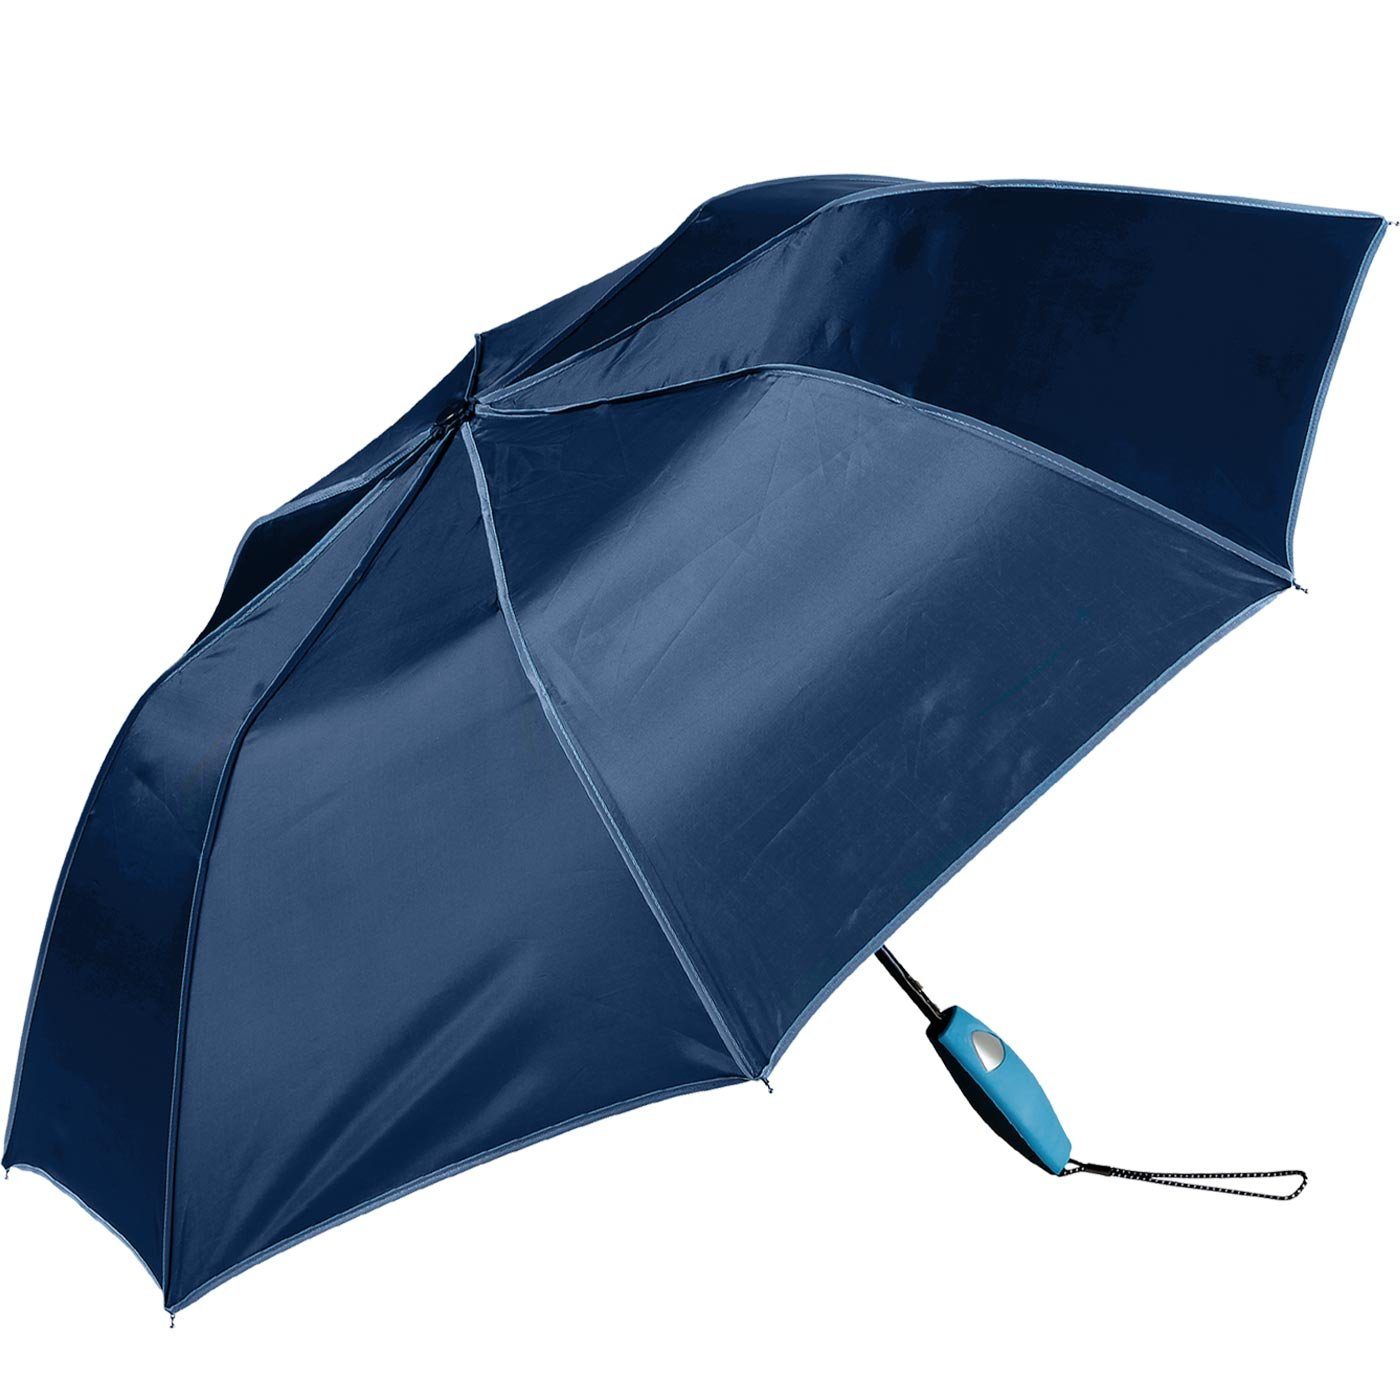 Impliva Taschenregenschirm Falconetti Auf-Automatik Griff, passender farblich navy-blau auffallend